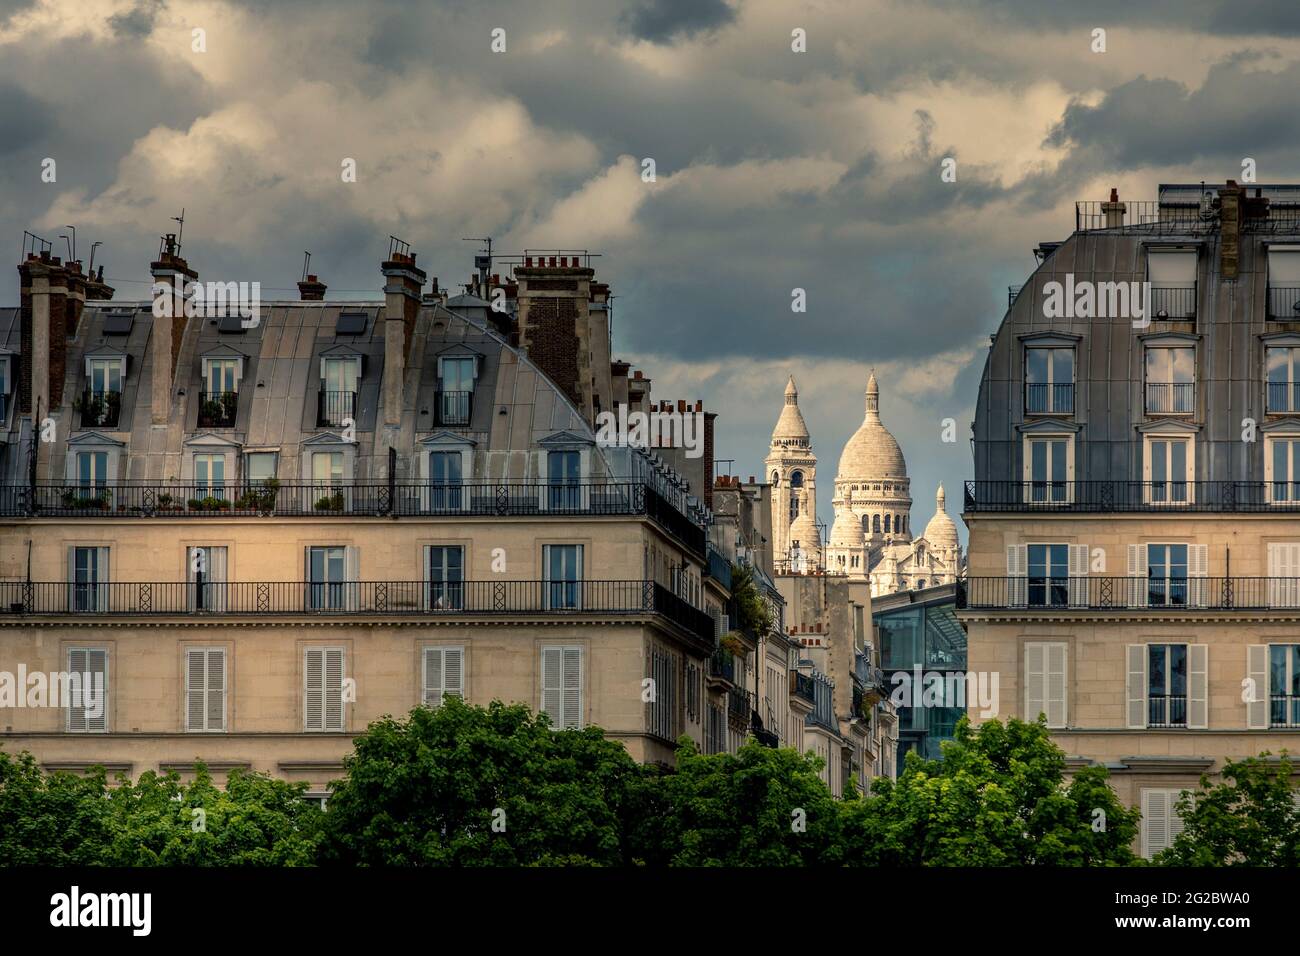 Paris, France - 13 mai 2021 : bâtiments typiques de la Haussmannien à Paris Banque D'Images